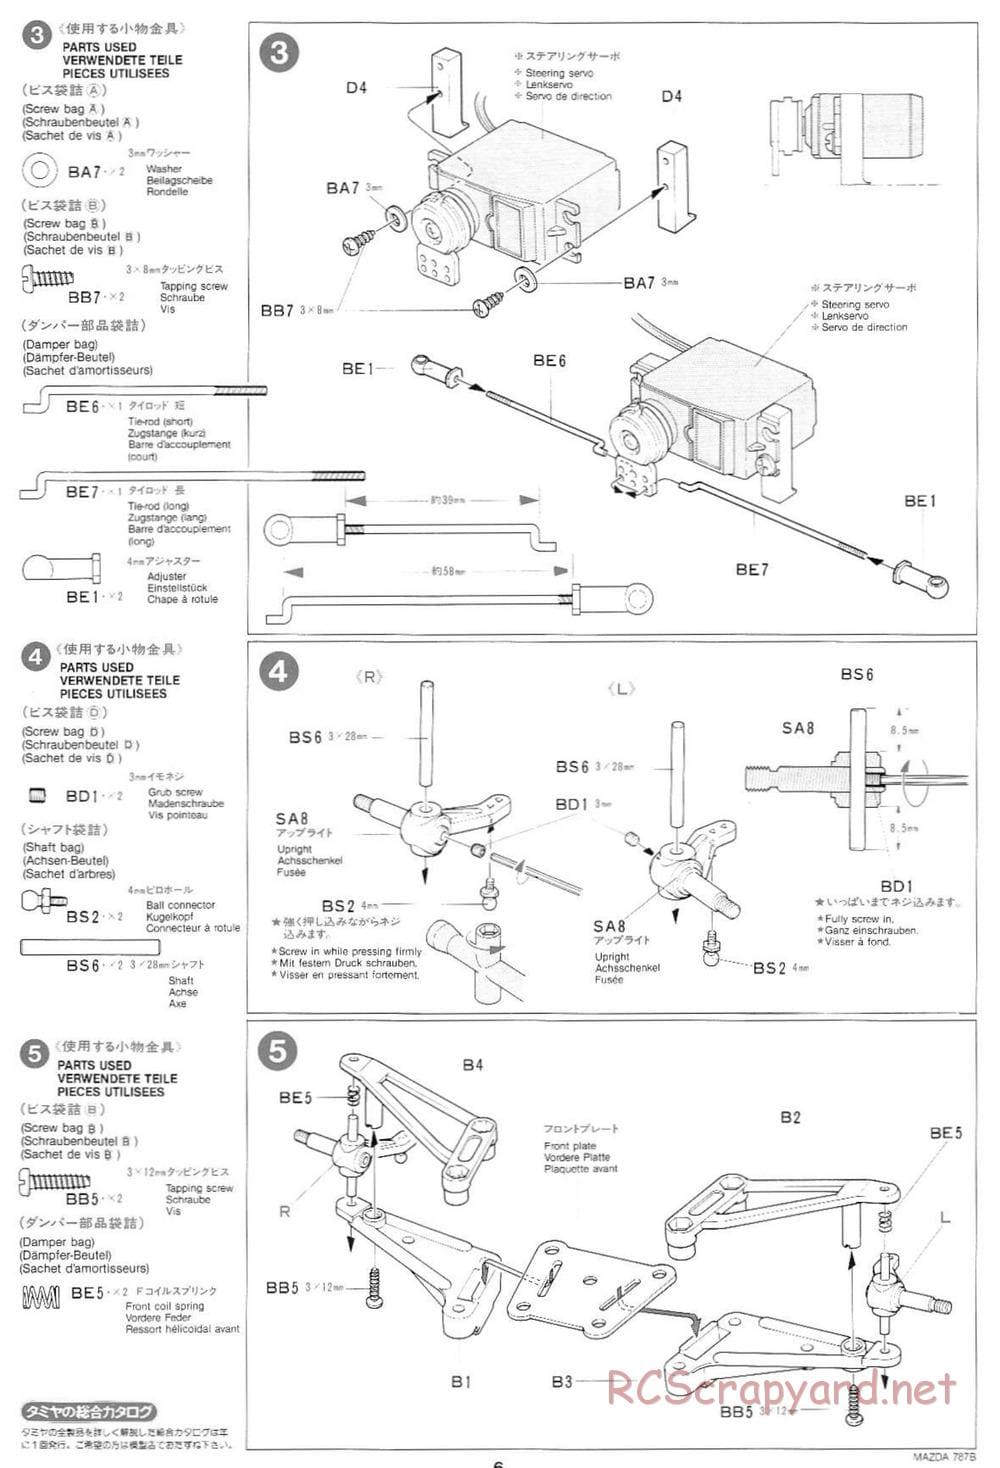 Tamiya - Mazda 787B - Group-C Chassis - Manual - Page 6